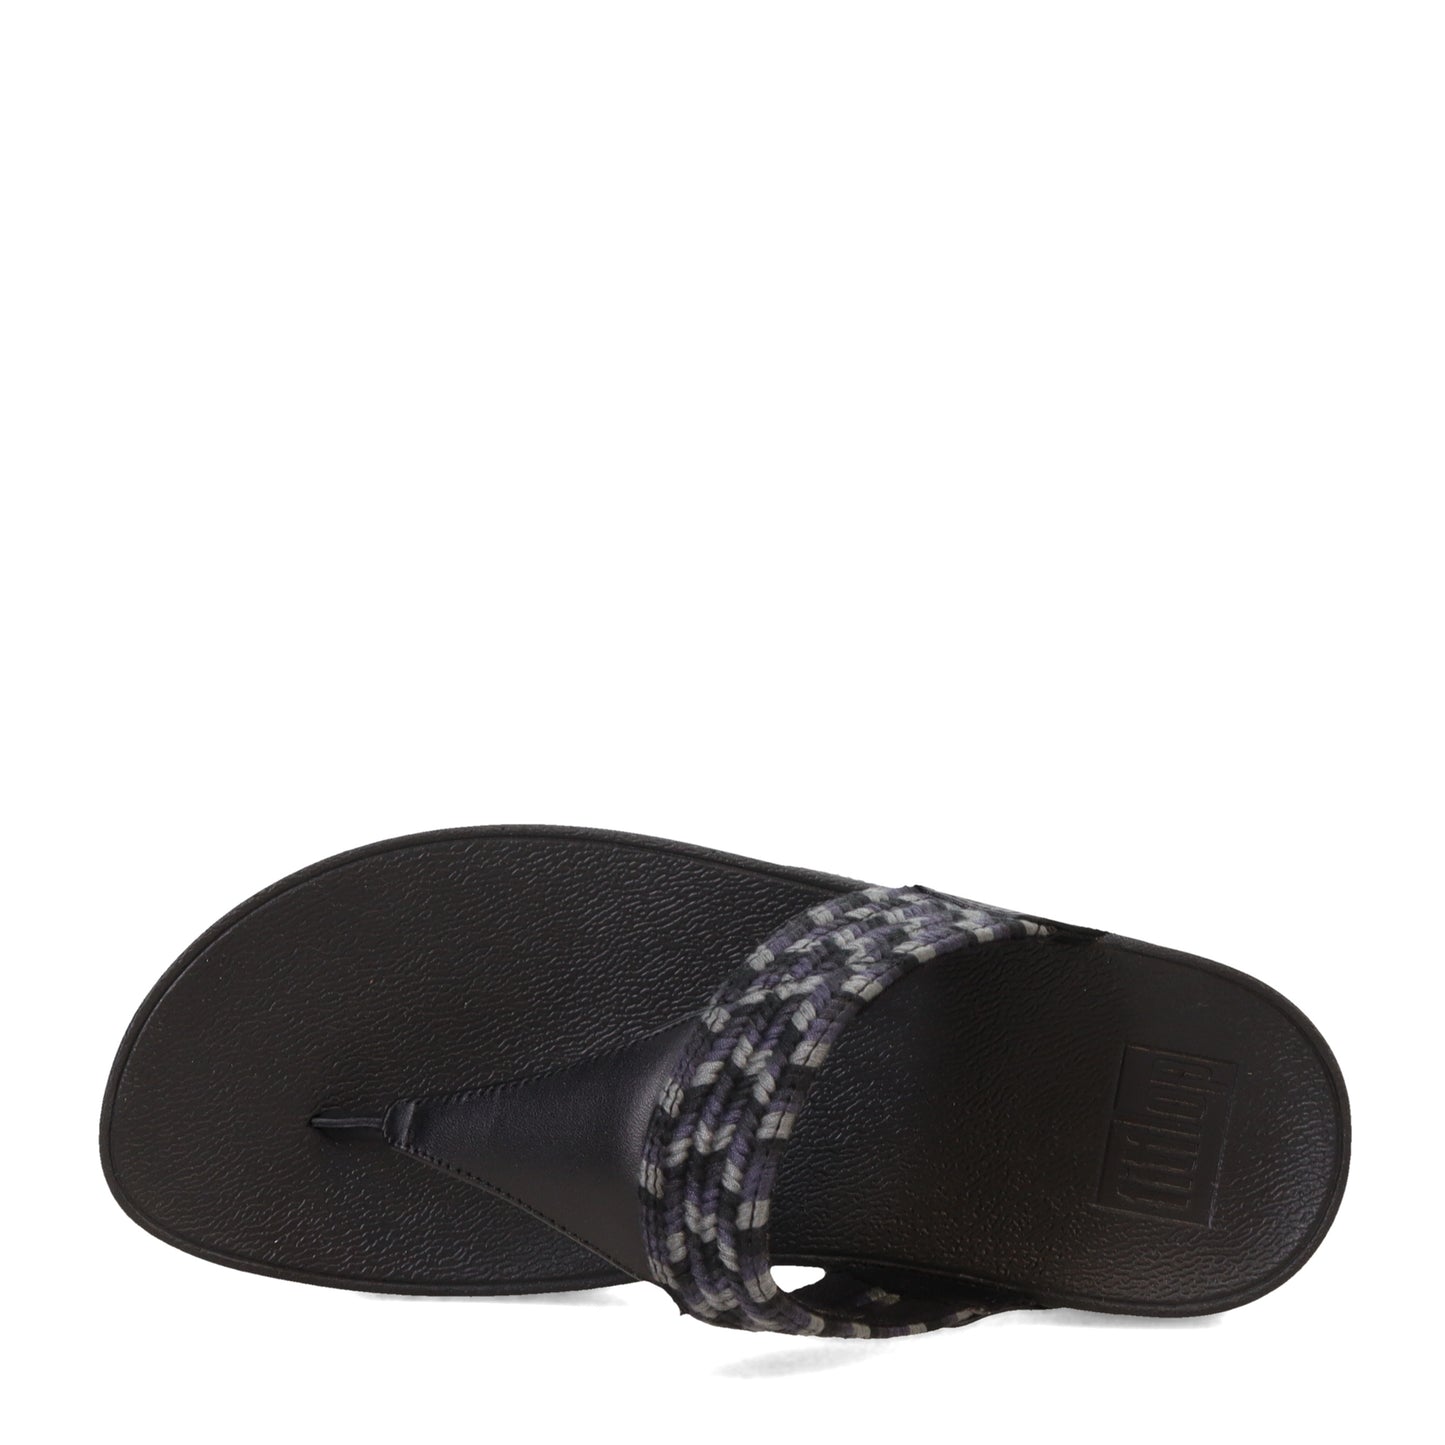 Peltz Shoes  Women's FitFlop Lulu Art Webbing Thong Sandal Black GY2-231